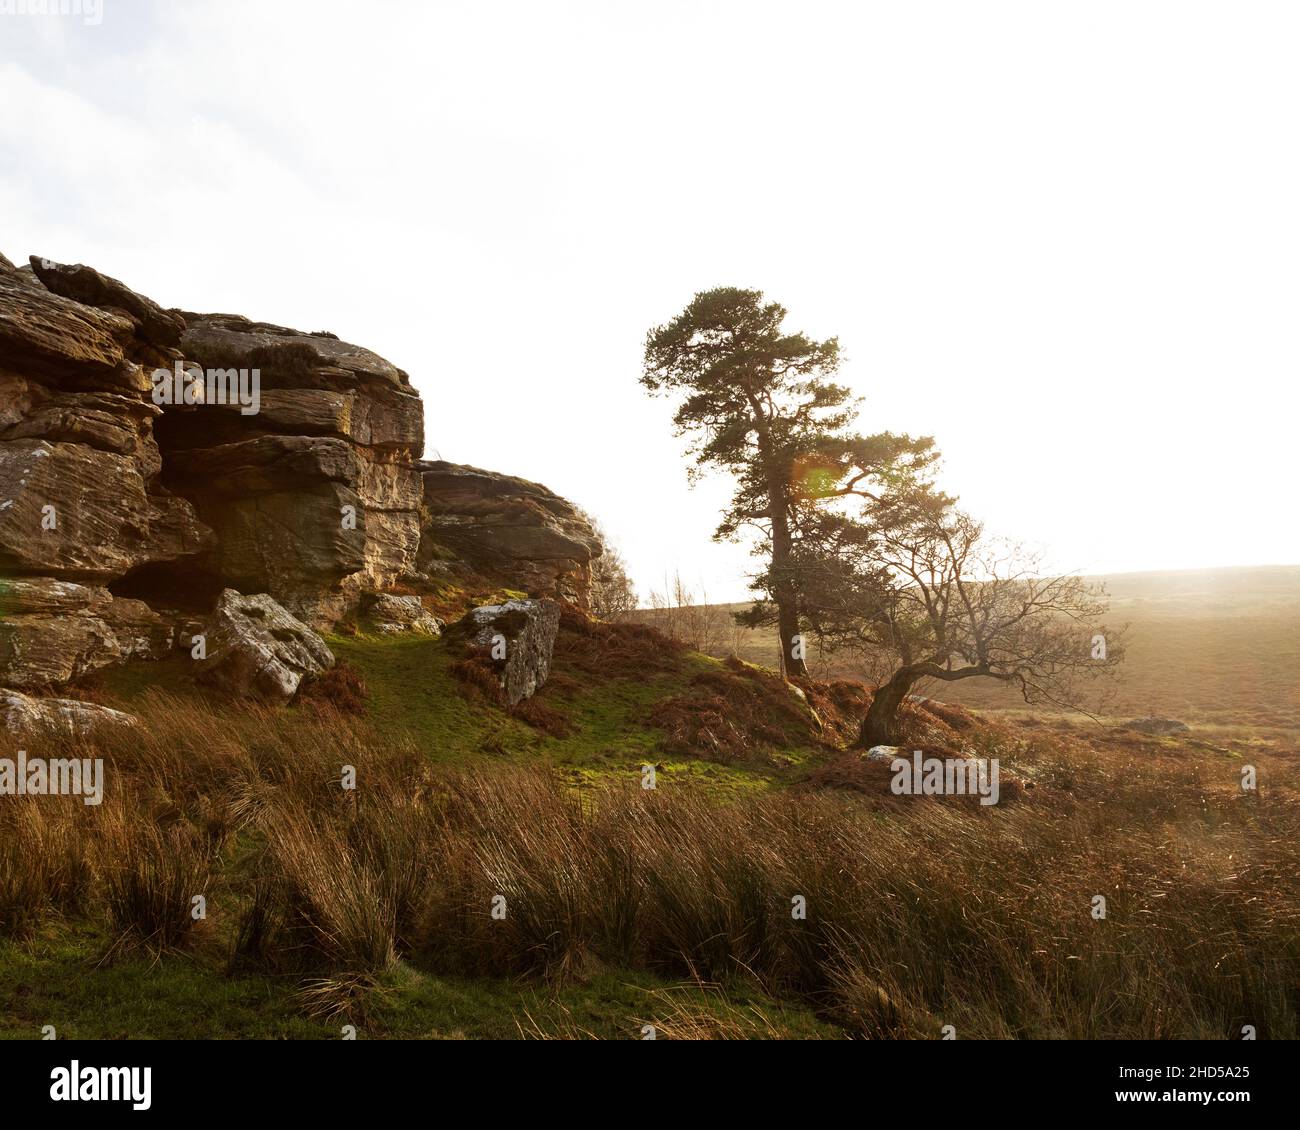 Arborez un affleurement rocheux à Shaftee Crags, dans le Northumberland, en Angleterre.Les rochers se trouvent sur un sentier près du lac Bolam. Banque D'Images